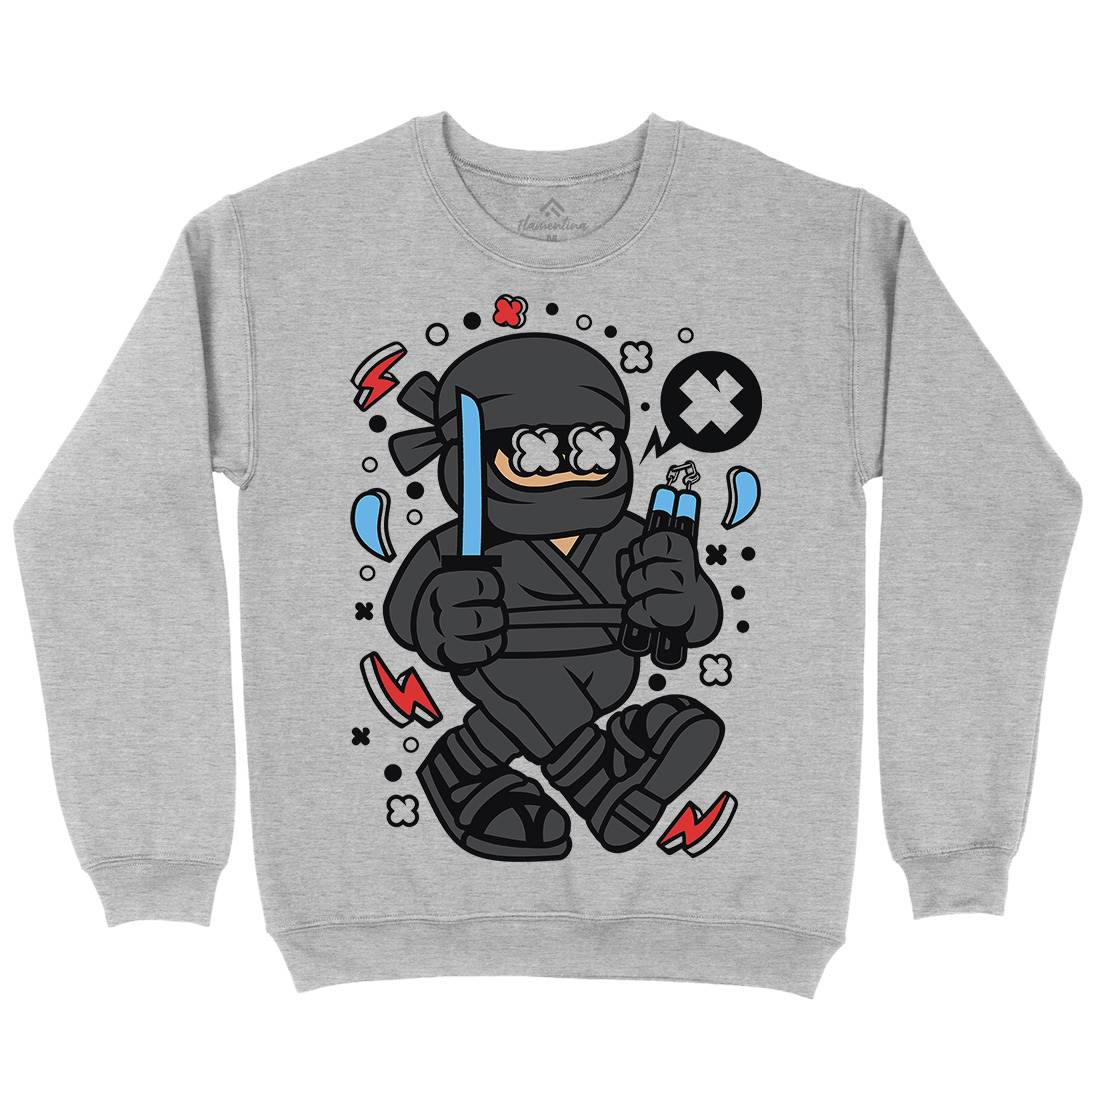 Ninja Kid Kids Crew Neck Sweatshirt Warriors C593